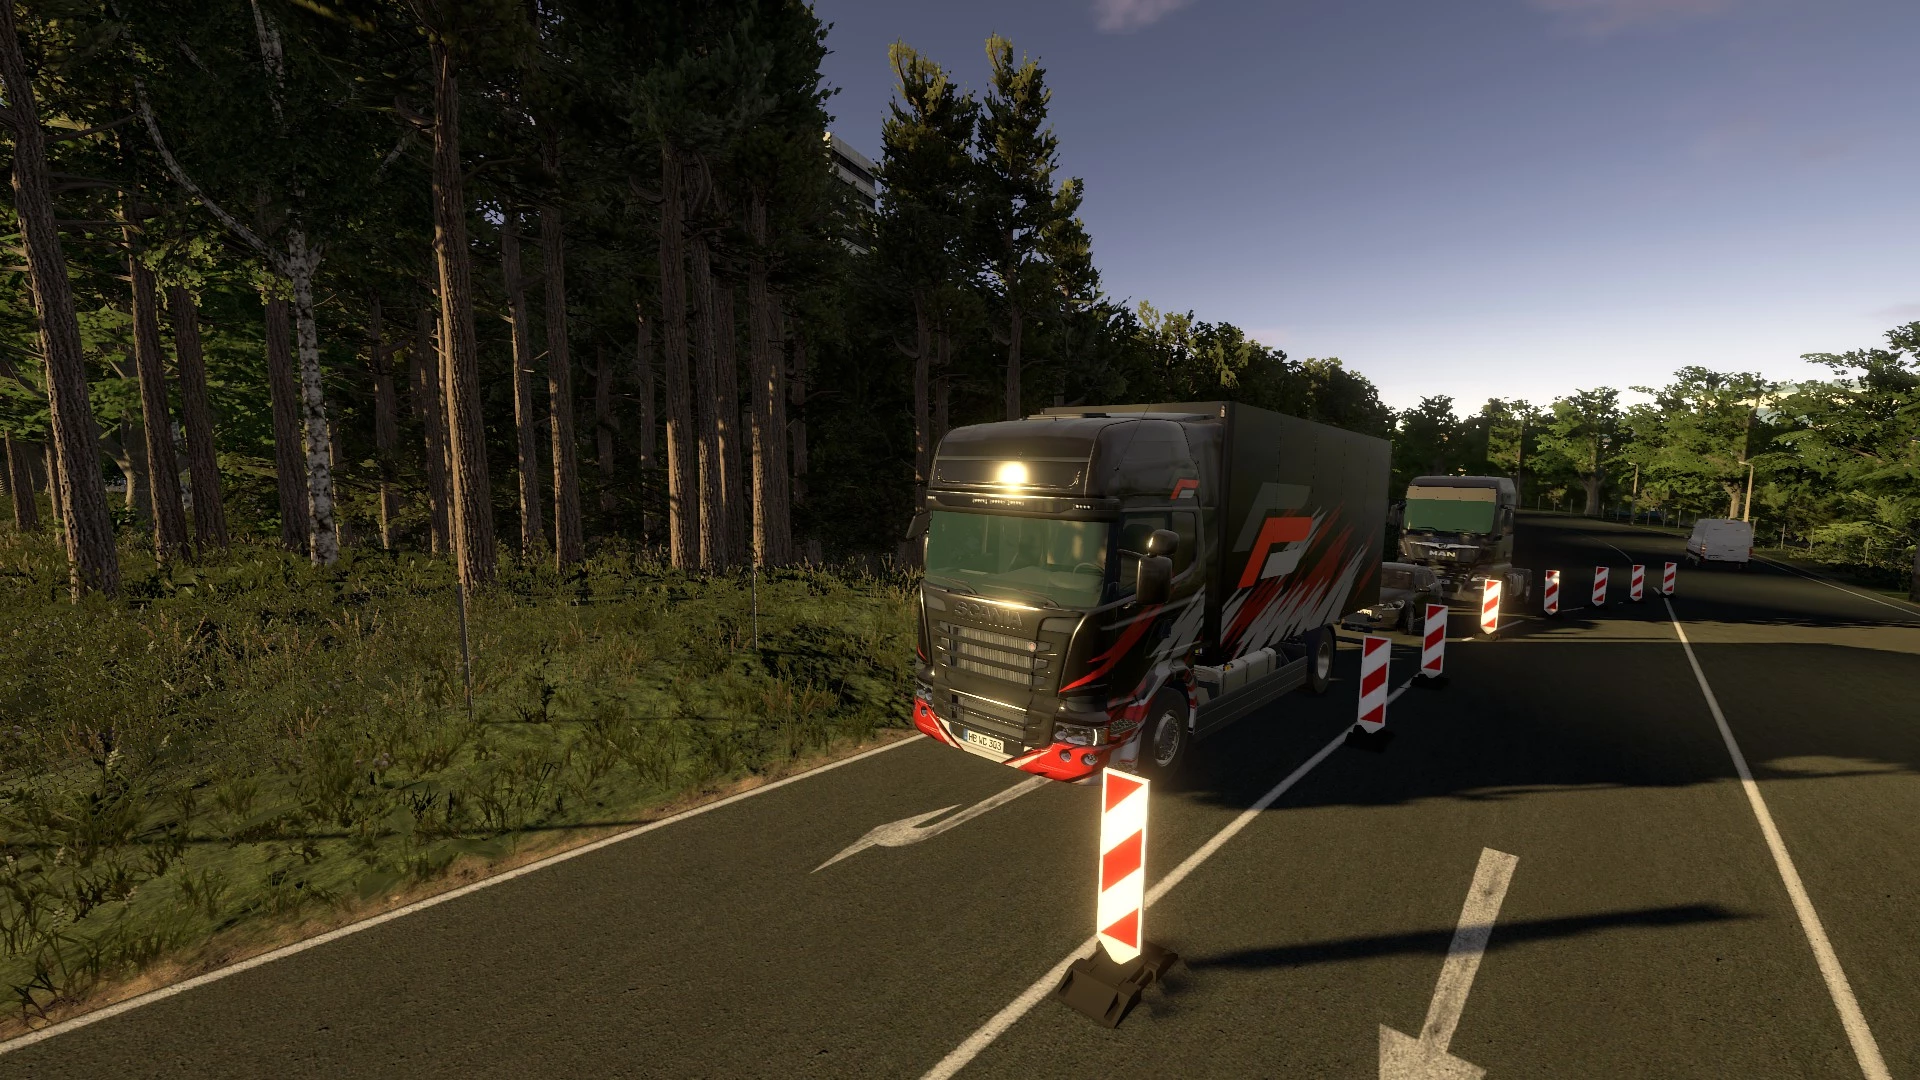 On the Road - Truck Simulator voor de PlayStation 5 kopen op nedgame.nl